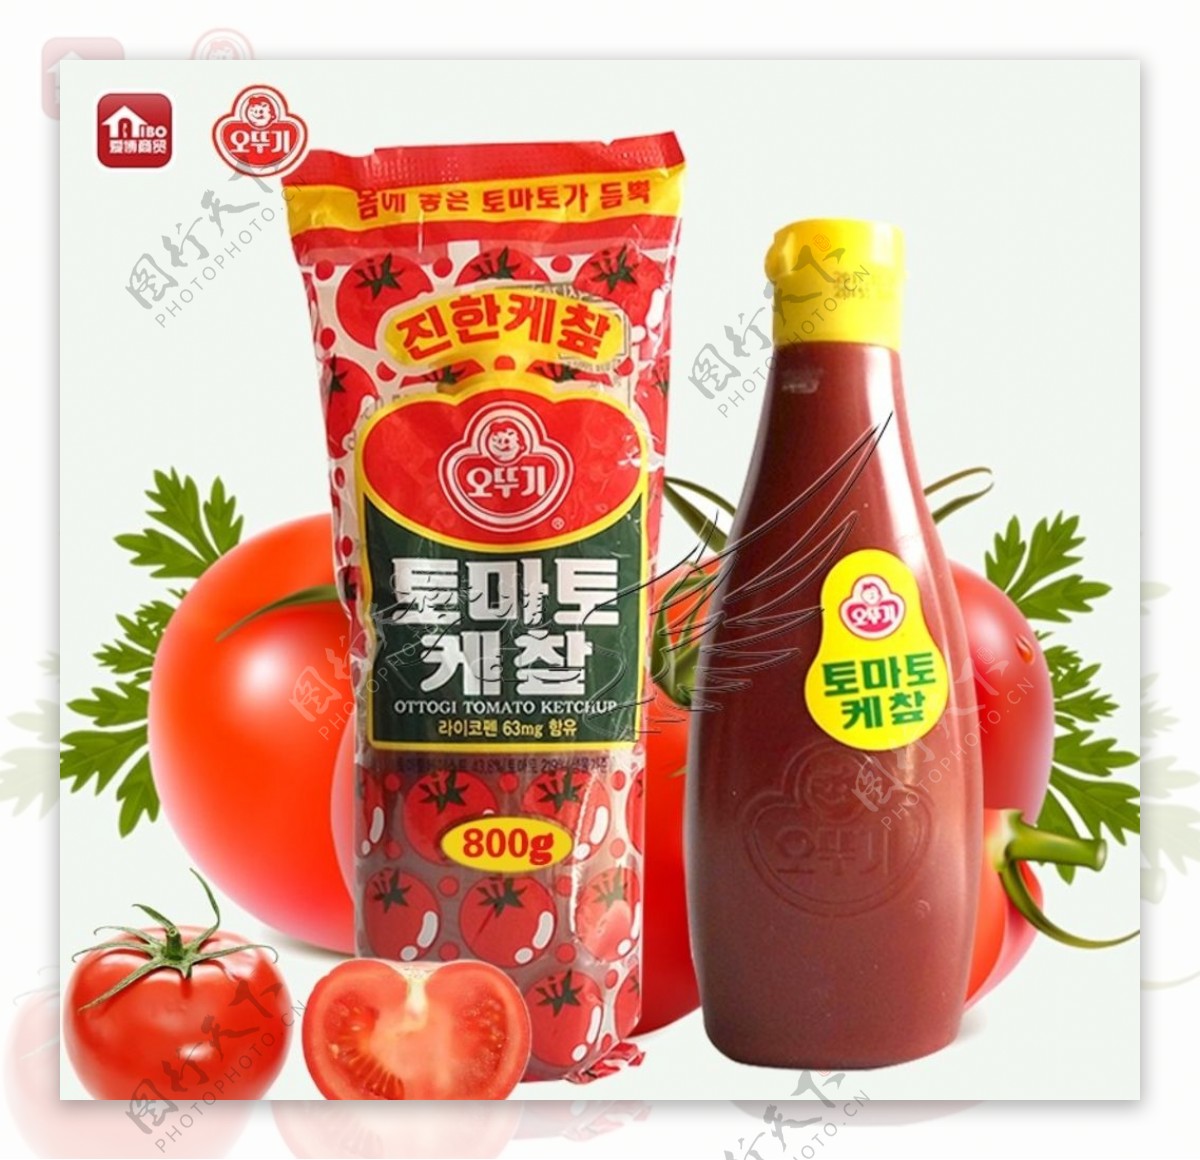 韩国不倒翁奥士基番茄酱